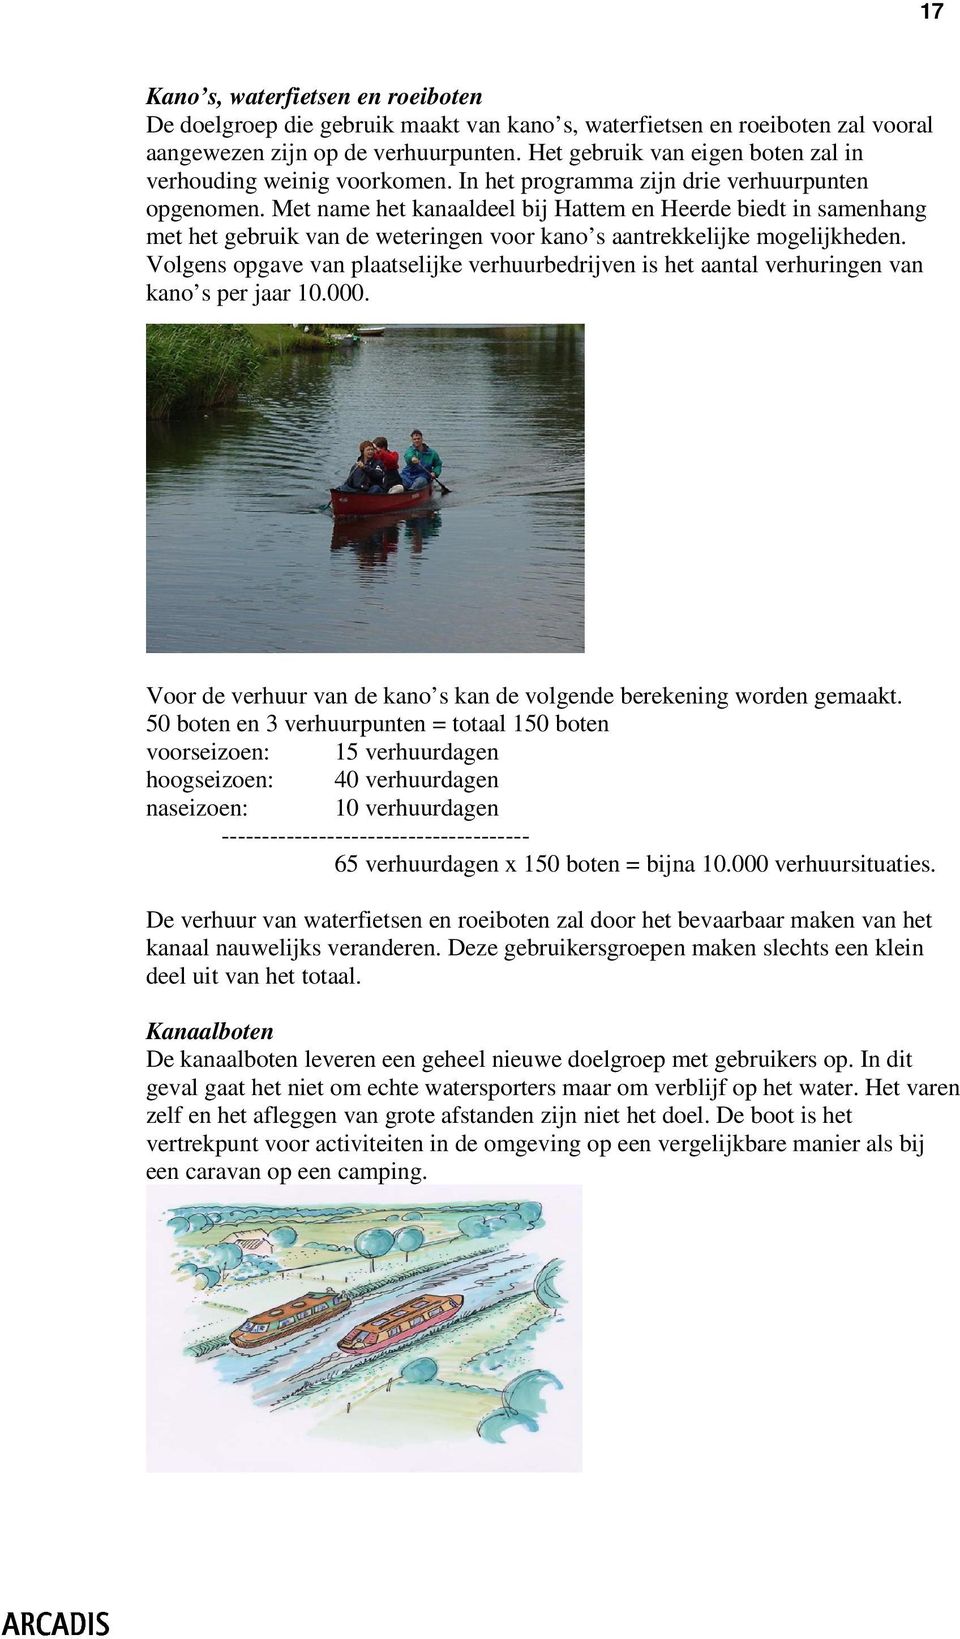 Met name het kanaaldeel bij Hattem en Heerde biedt in samenhang met het gebruik van de weteringen voor kano s aantrekkelijke mogelijkheden.